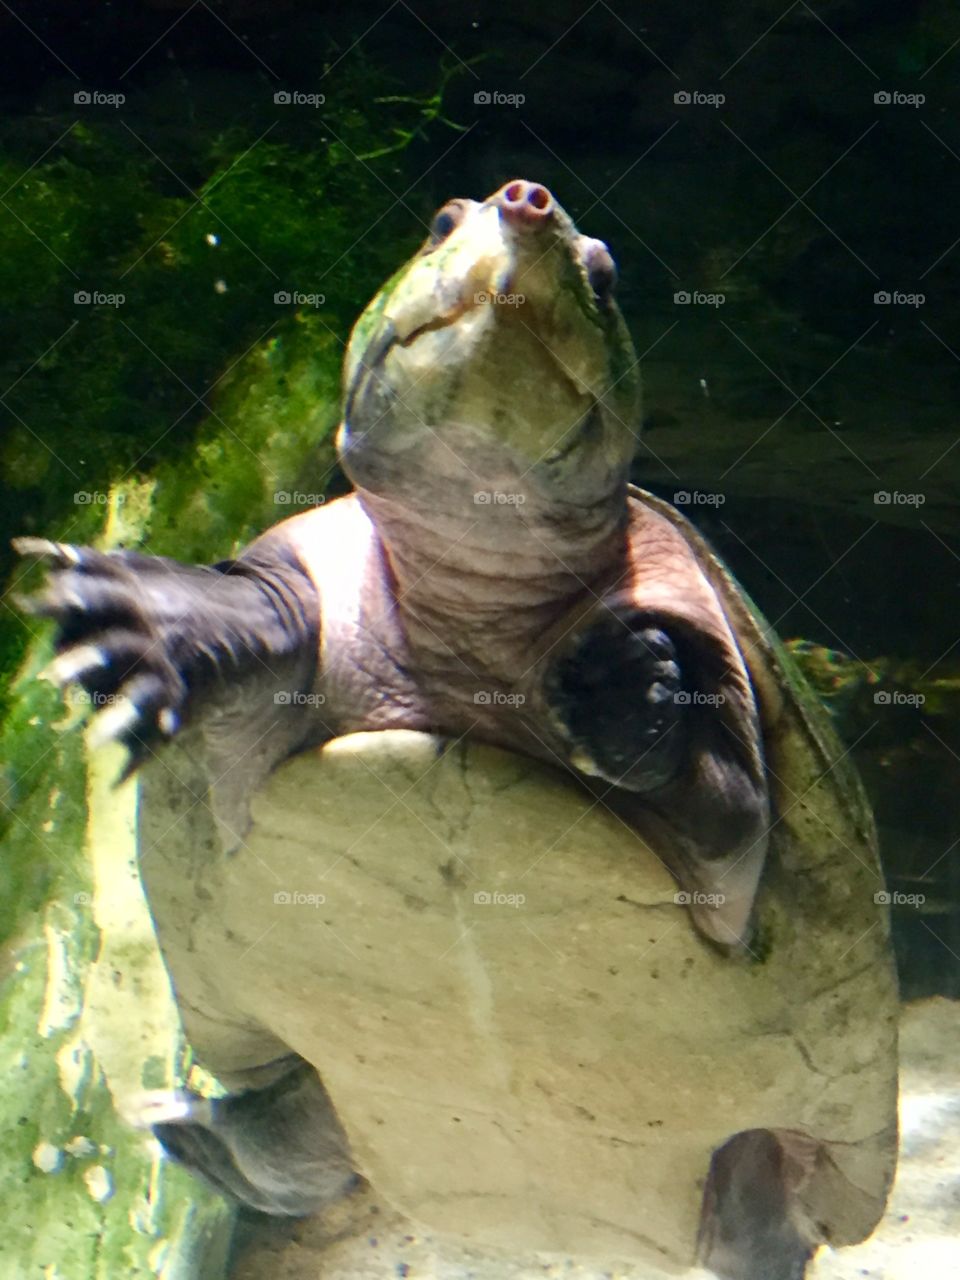 Turtle at Baltimore Aquarium in Maryland